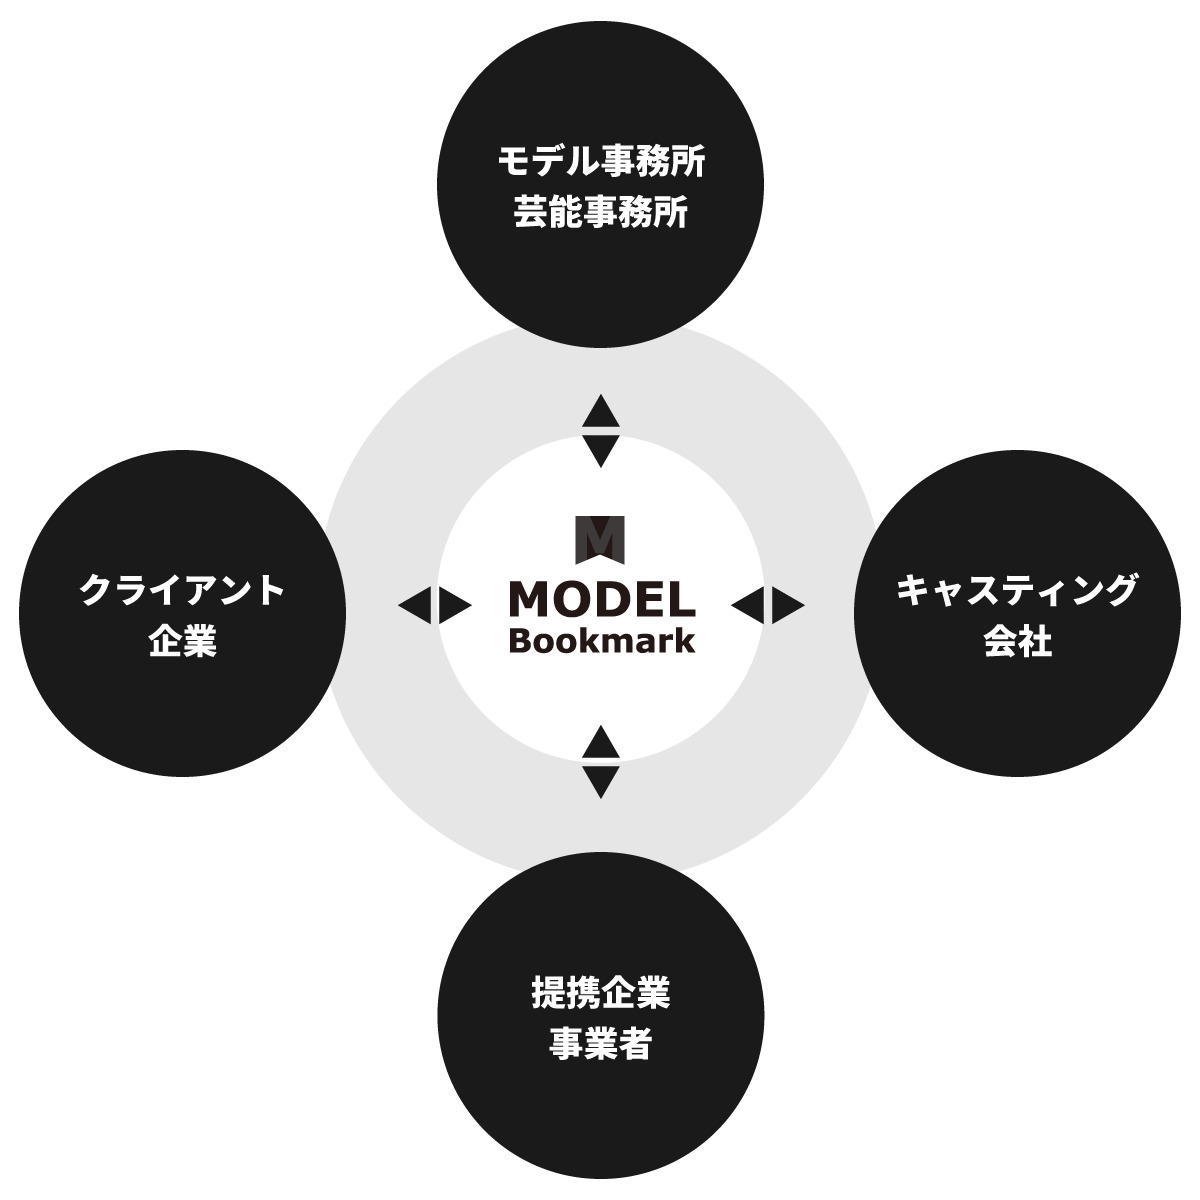 モデルの撮影依頼はモデルブックマーク（MODEL Bookmark）へ